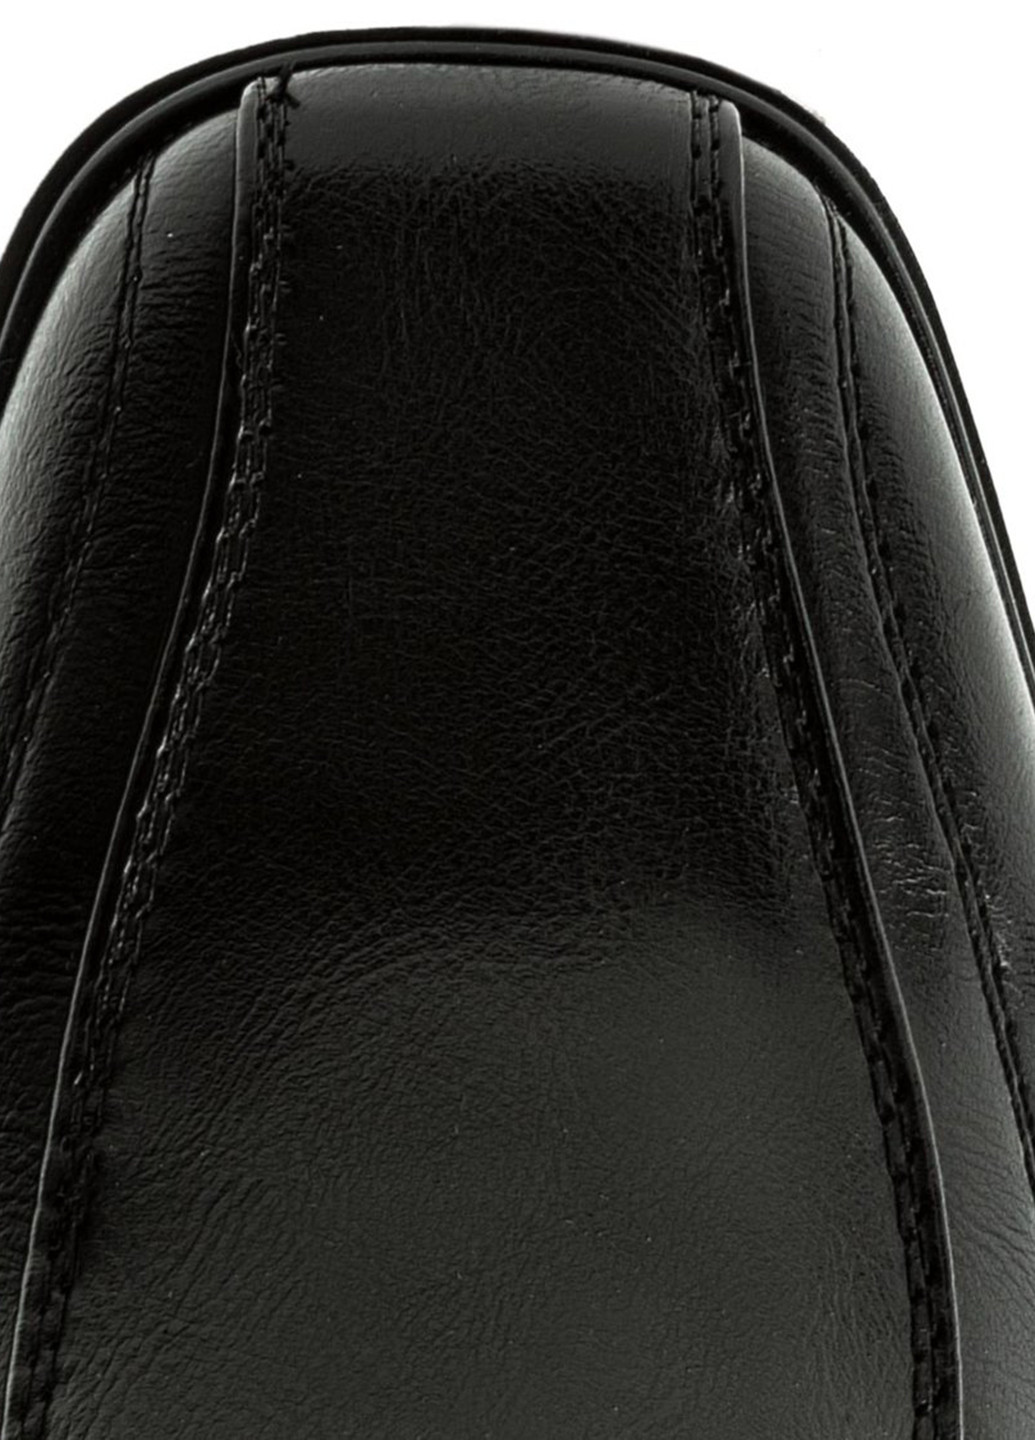 Черные туфлі cyl1002a-1 Vapiano